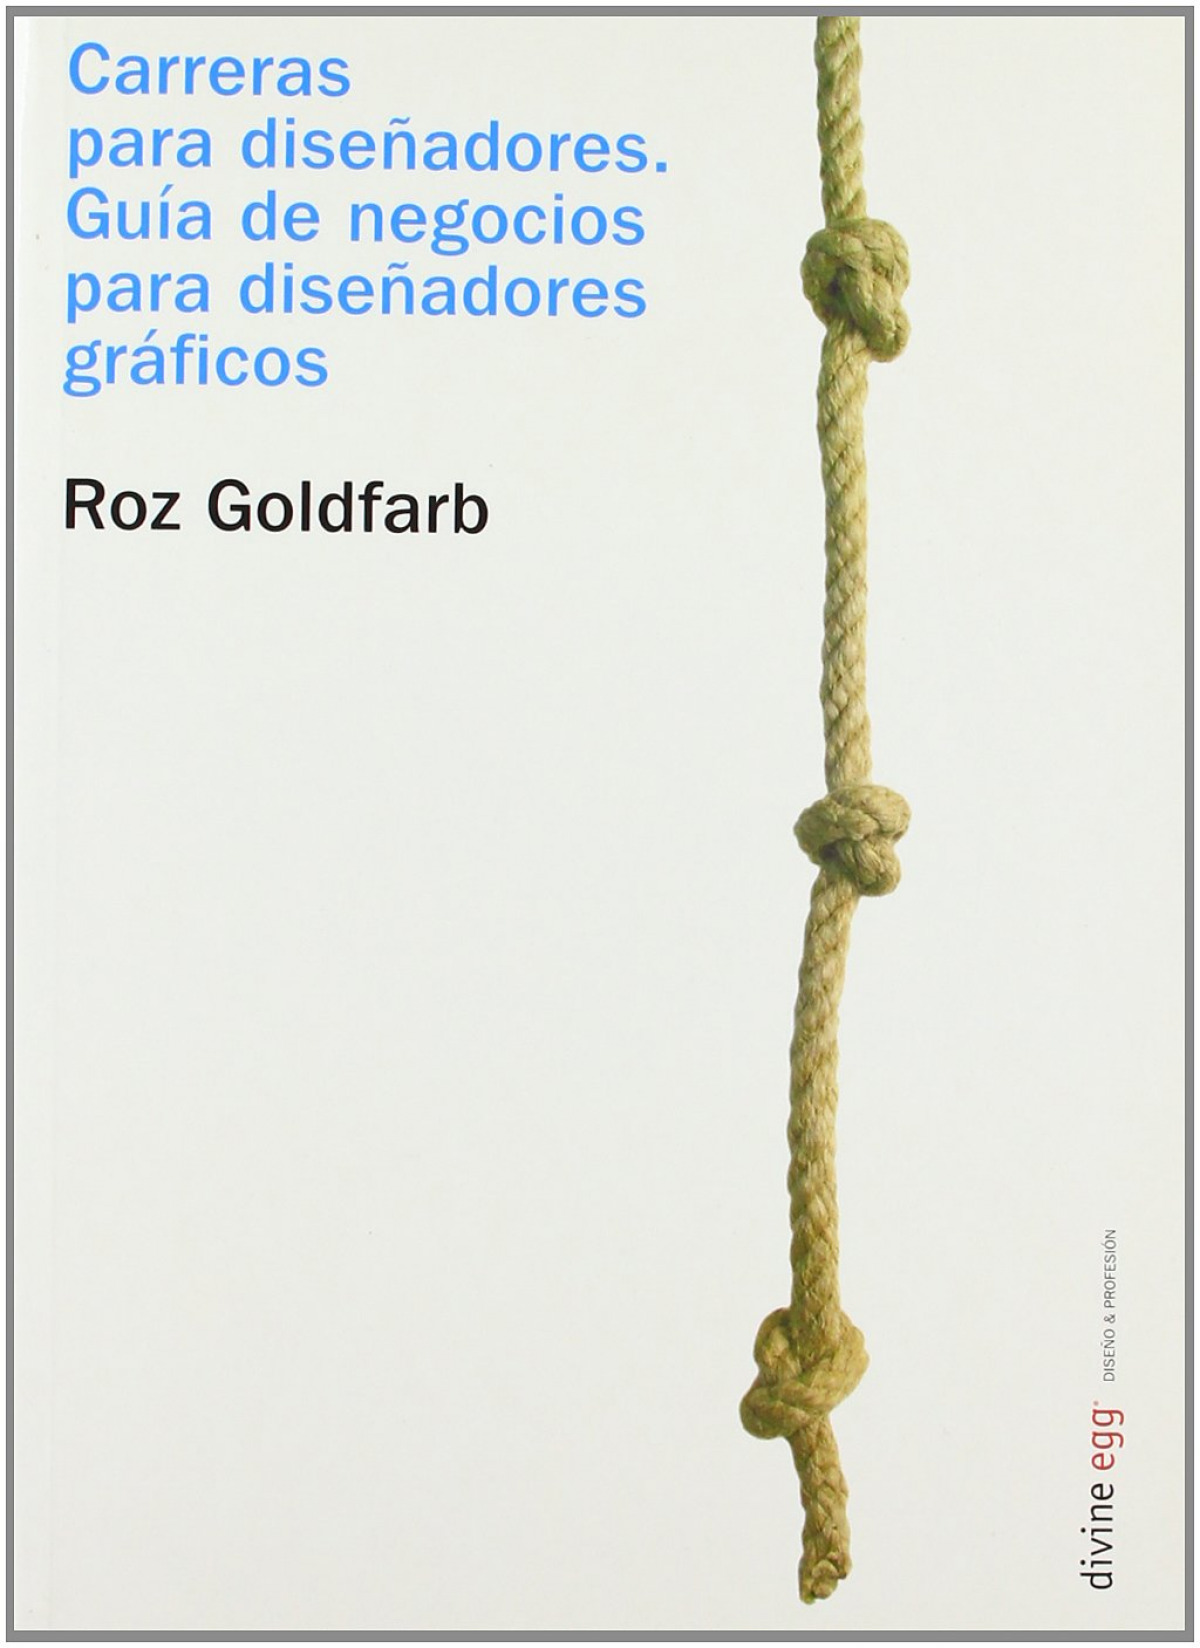 Carreras para diseÑadores - Goldfarb, Roz